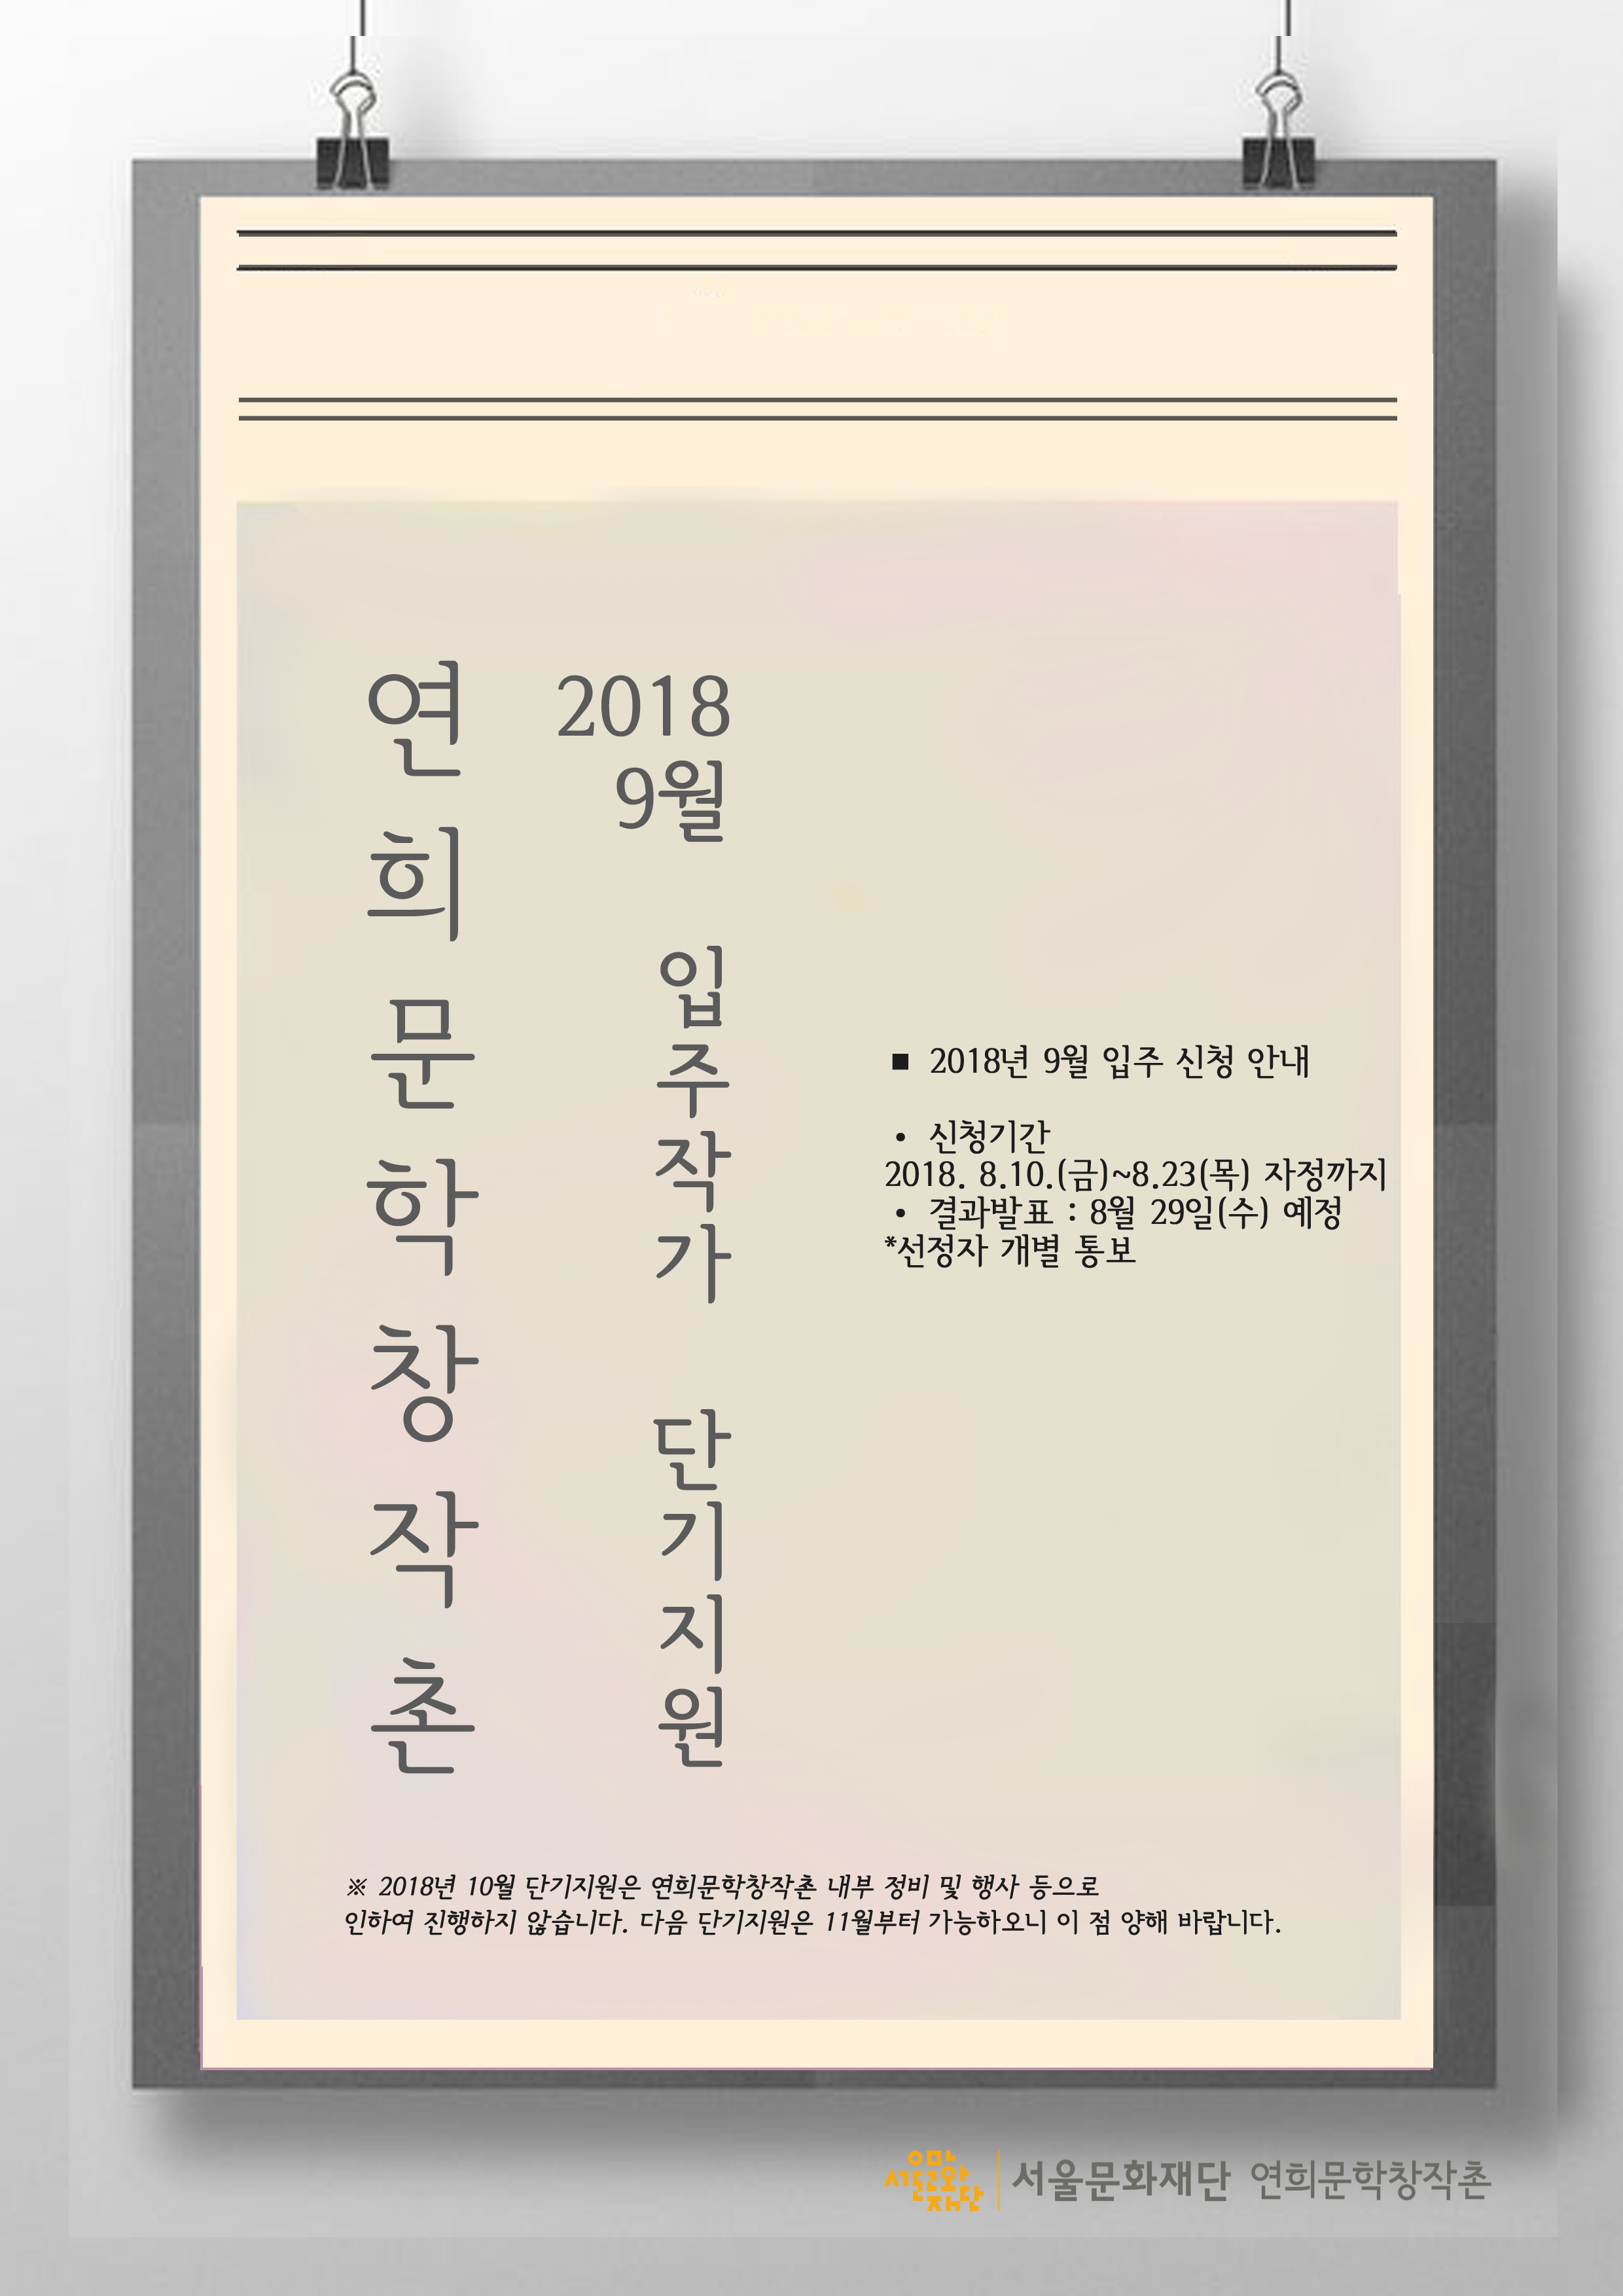 2018 연희문학창작촌 입주작가 단기지원 공모(9월)